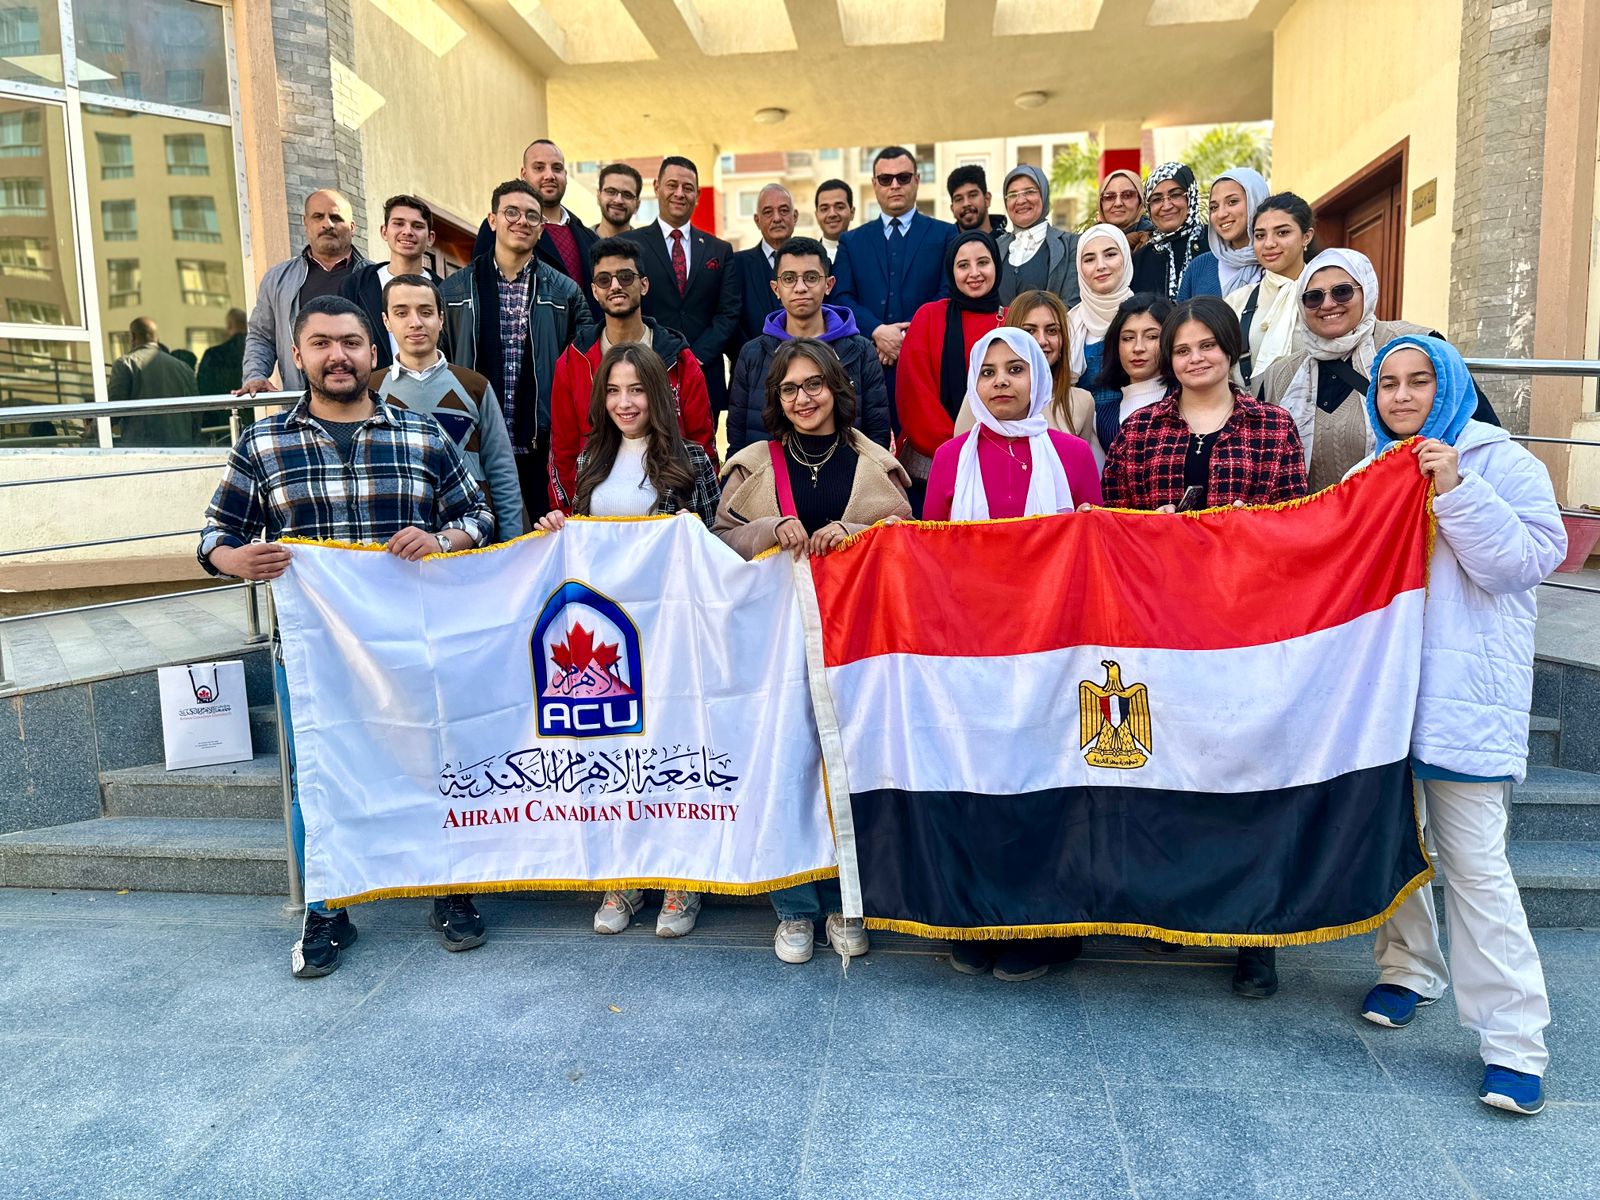 الأهرام الكندية تنظم "يوم في حب مصر" بالعاصمة الإدارية الجديدة